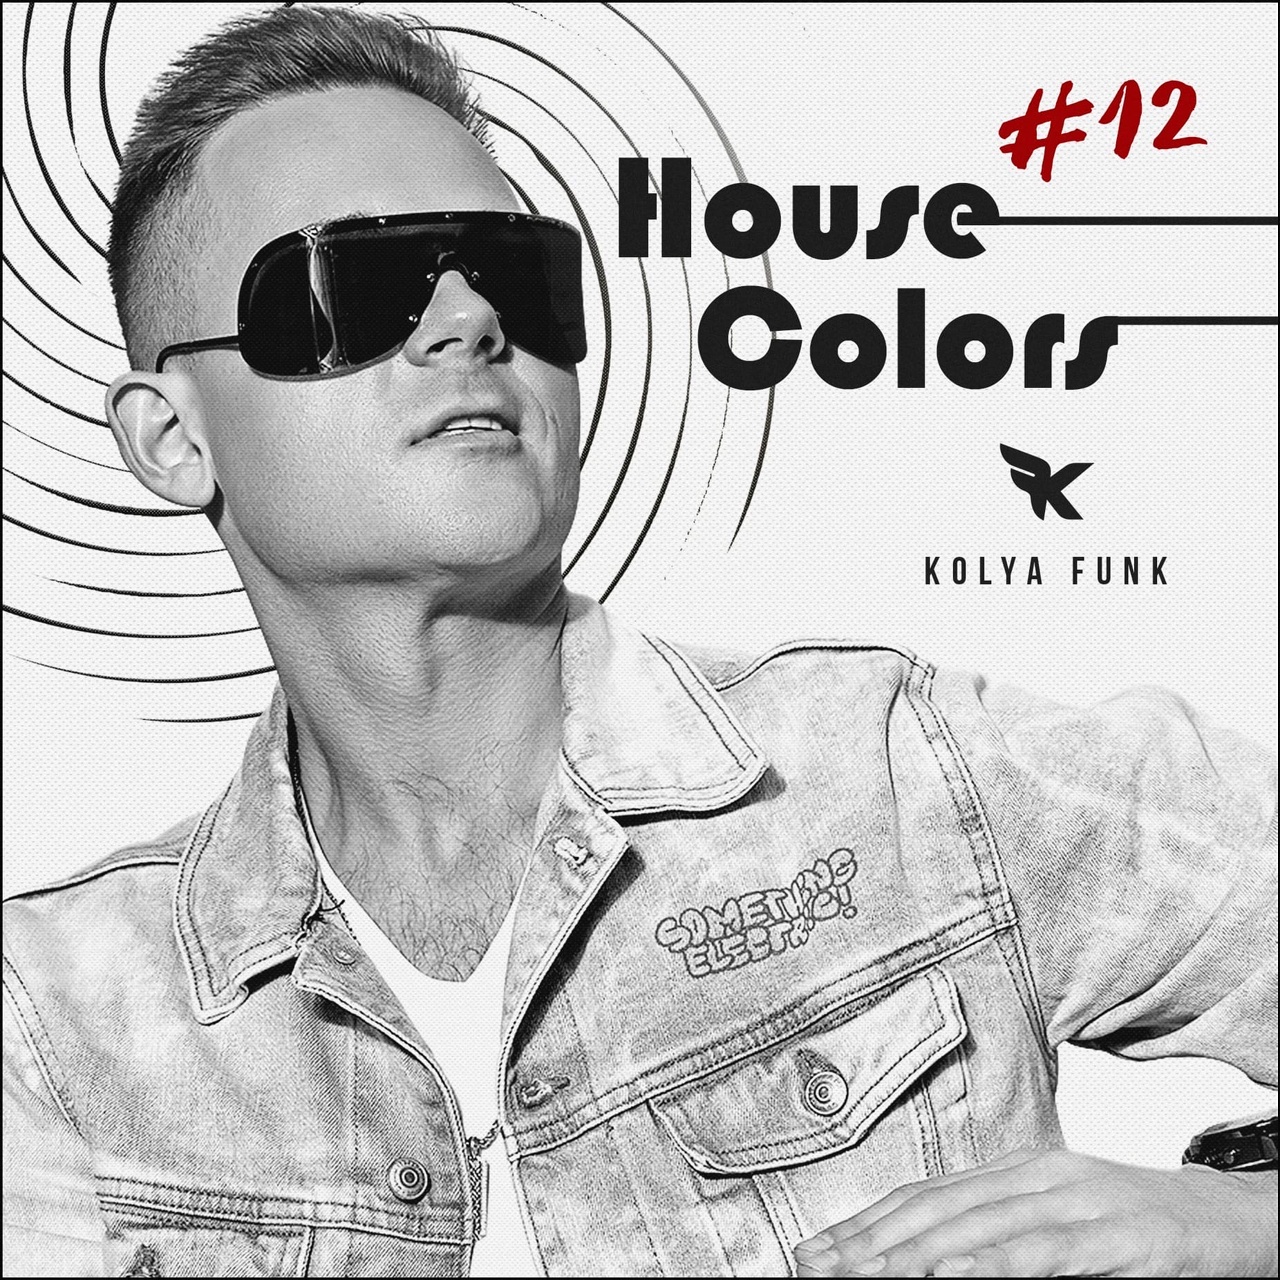 Landa Kolya Funk - House Colors #012